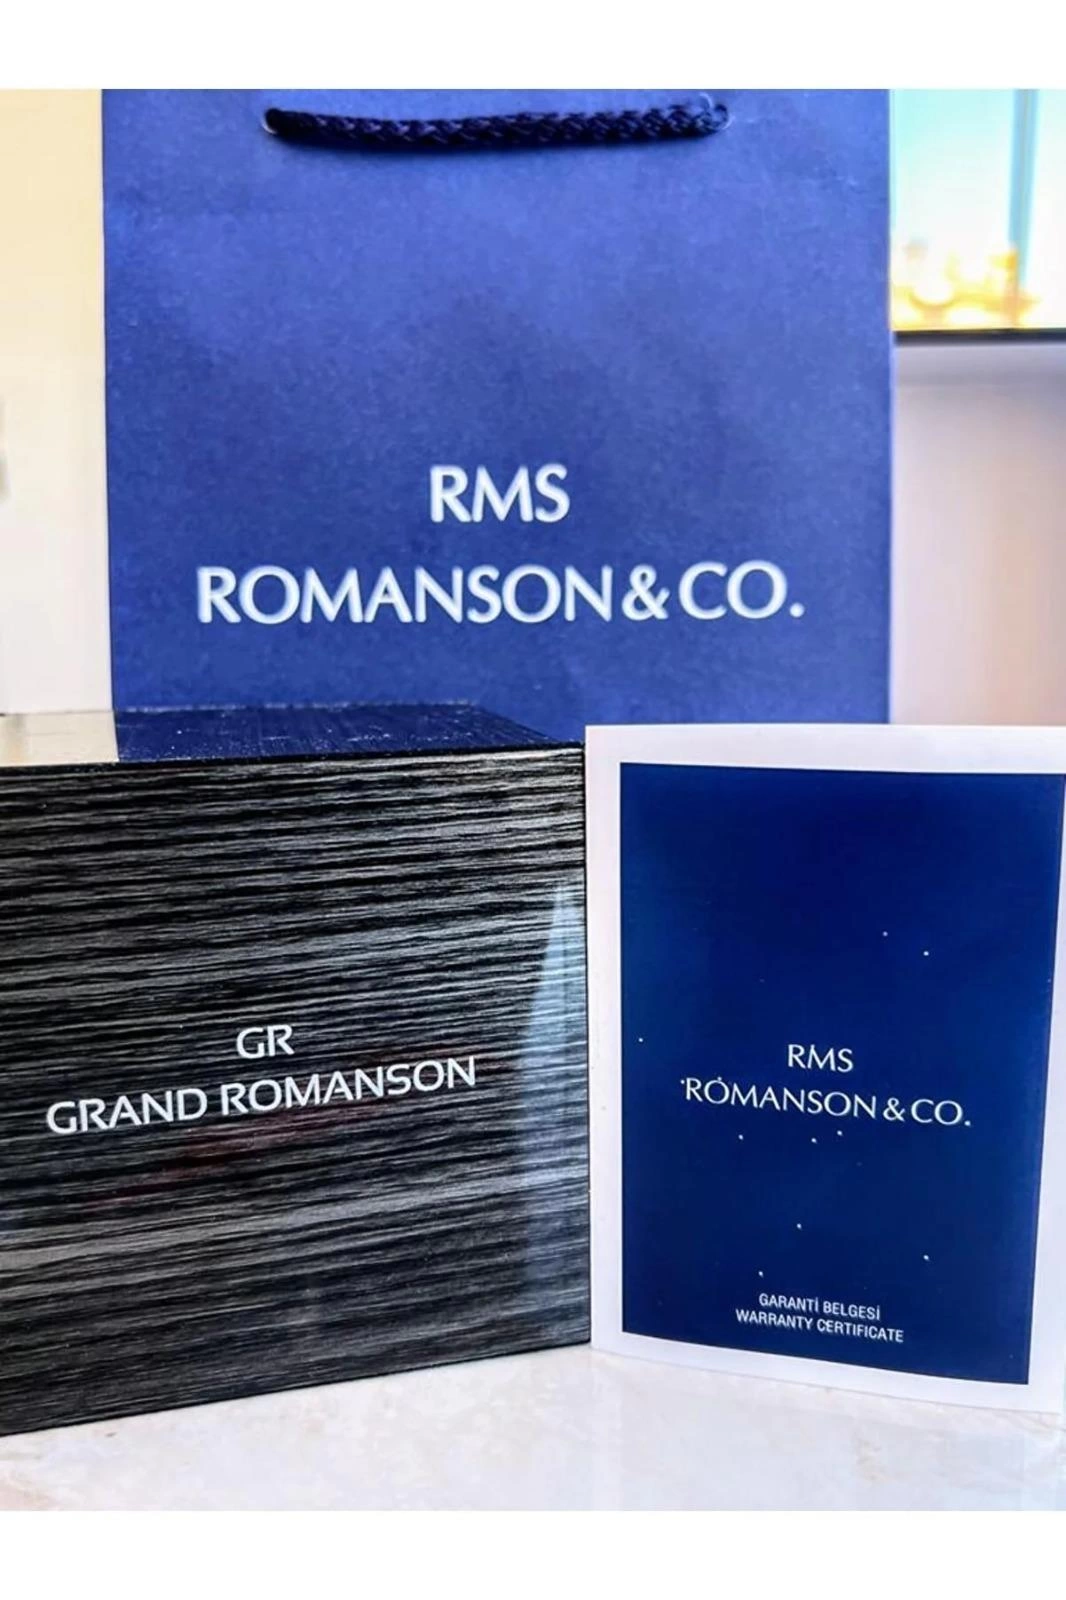 RMS.105 Romanson Özel Seri Takım Elbiseye Özel Tasarım Damat & Nişan Saati  Kararmaz Renk Atmaz